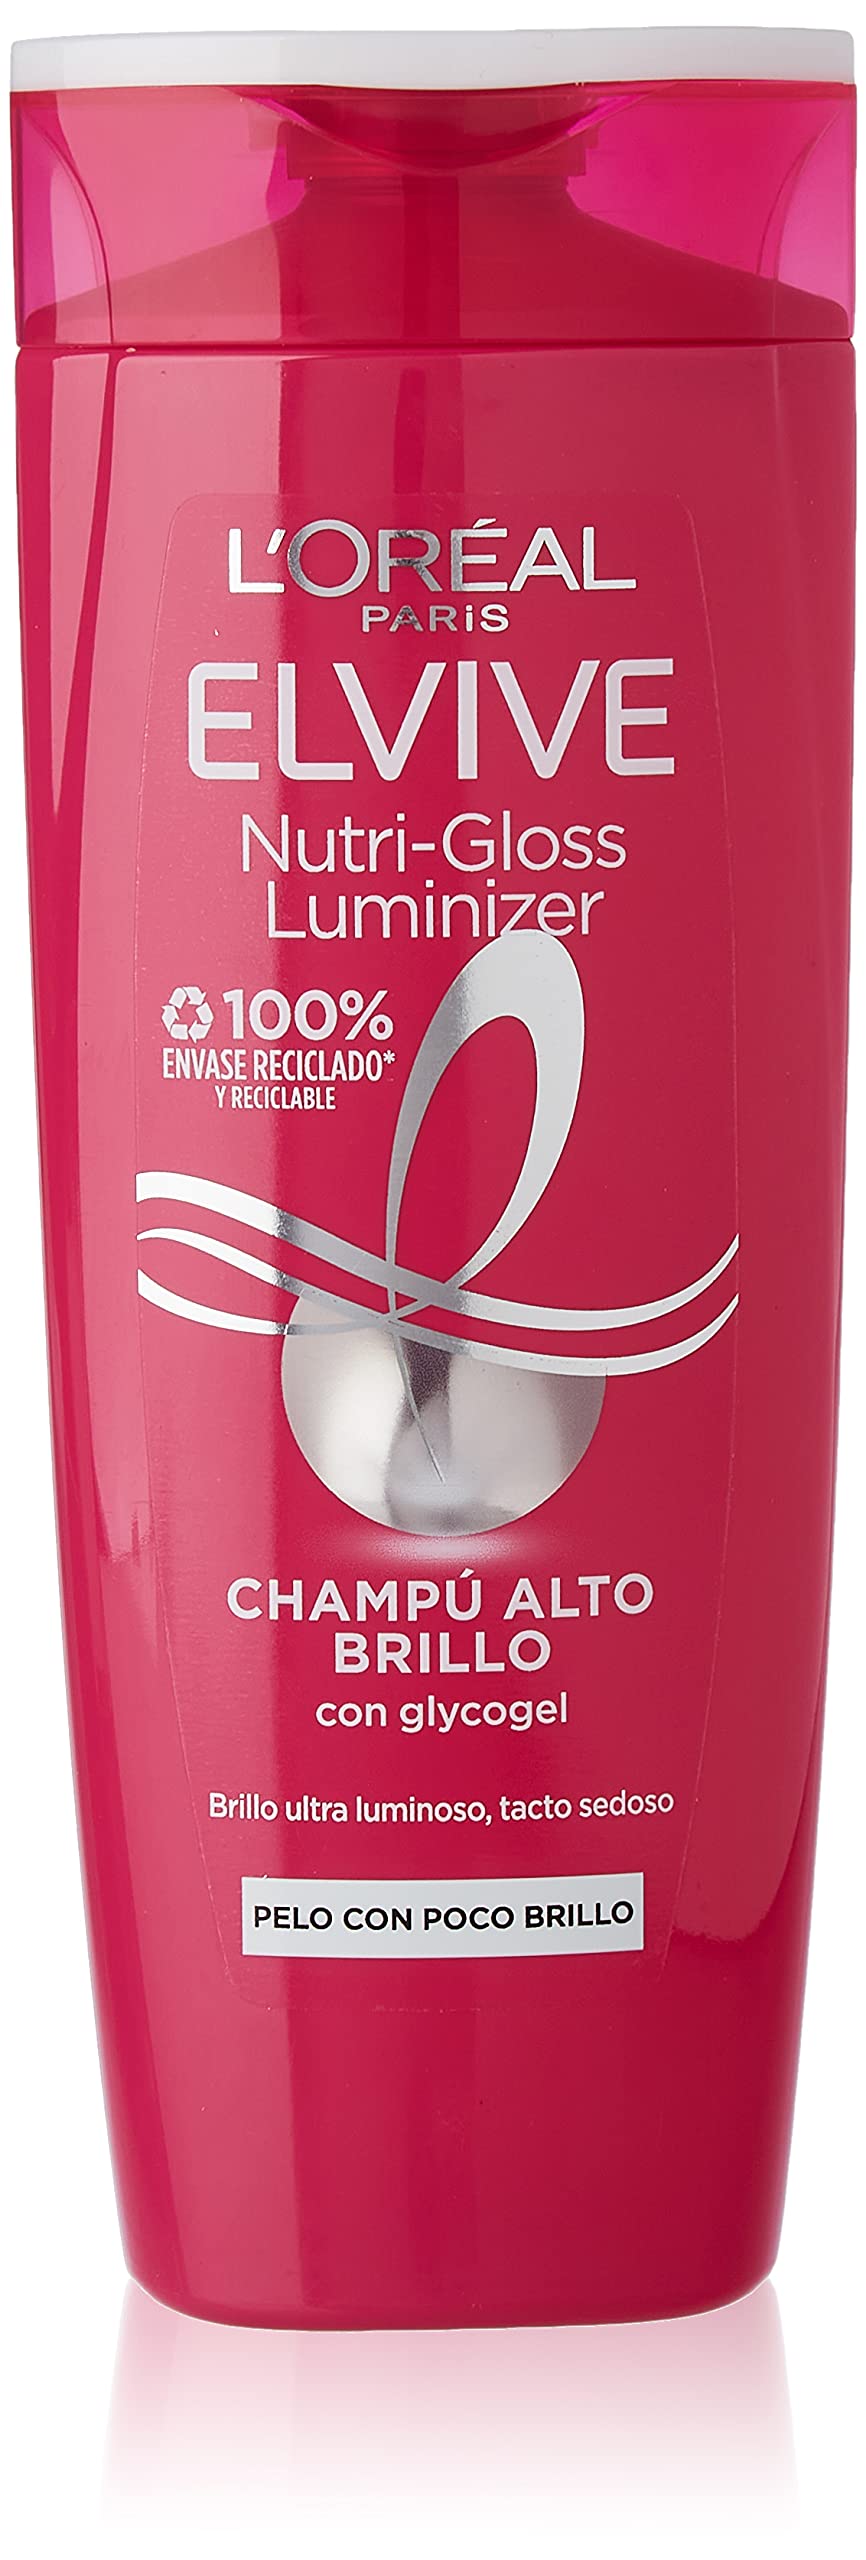 szampon nutri glosss luminazer wizaz